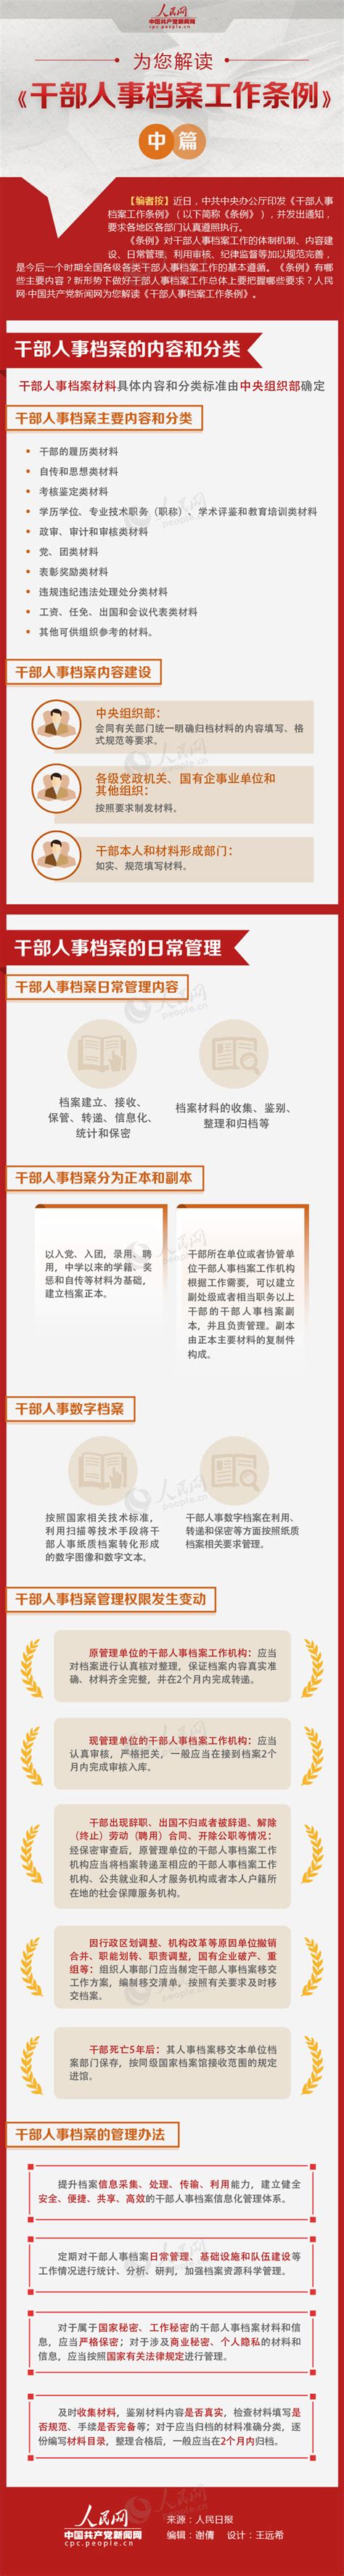 图解：为您解读《干部人事档案工作条例》中篇_新闻中心_中国网